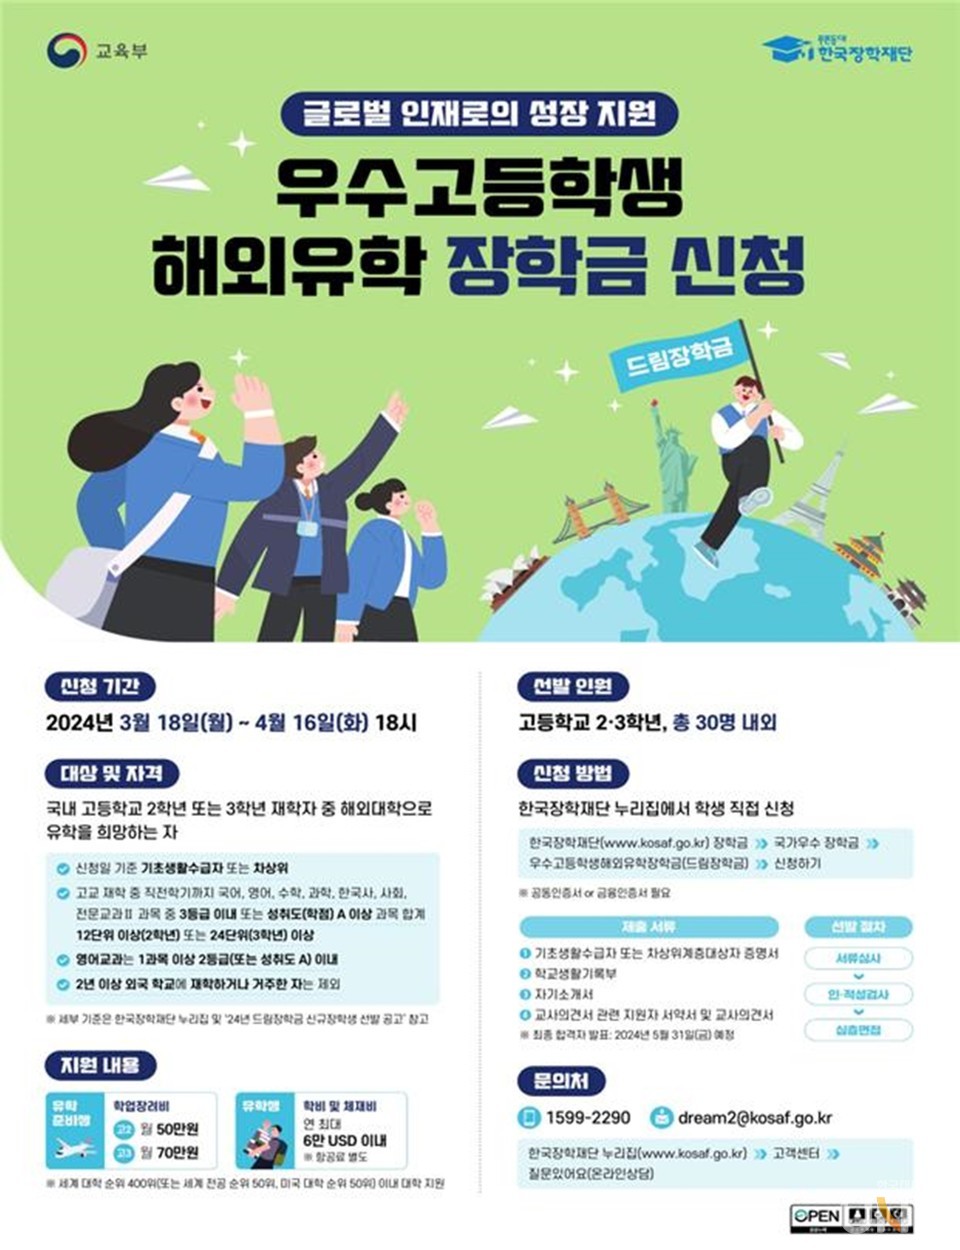 한국장학재단은 18일부터 성적 우수 고등학생의 해외유학을 지원하는 드림장학금 신규 장학생 선발에 나선다. (사진=한국장학재단)